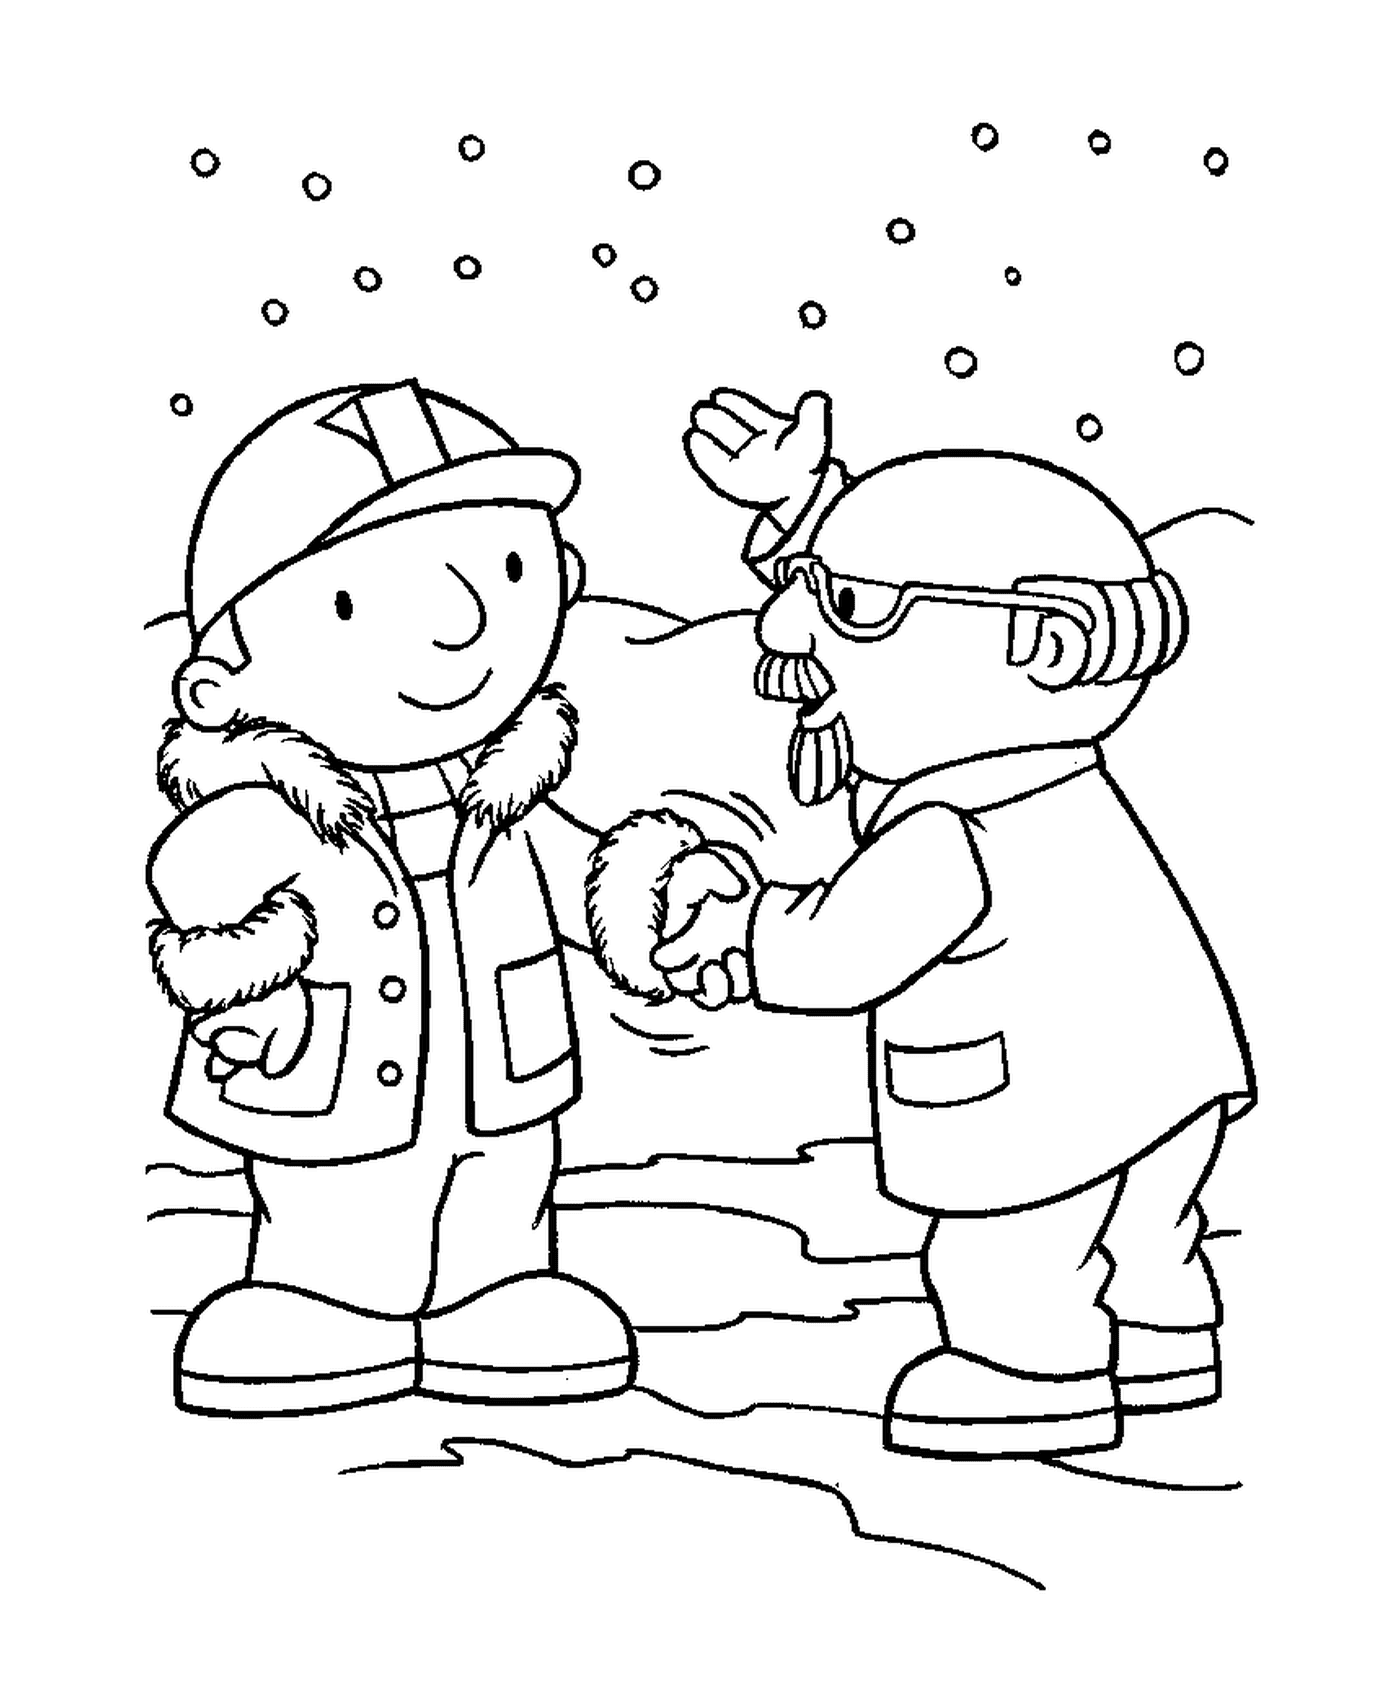  Zwei Menschen schütteln die Hände im Schnee 